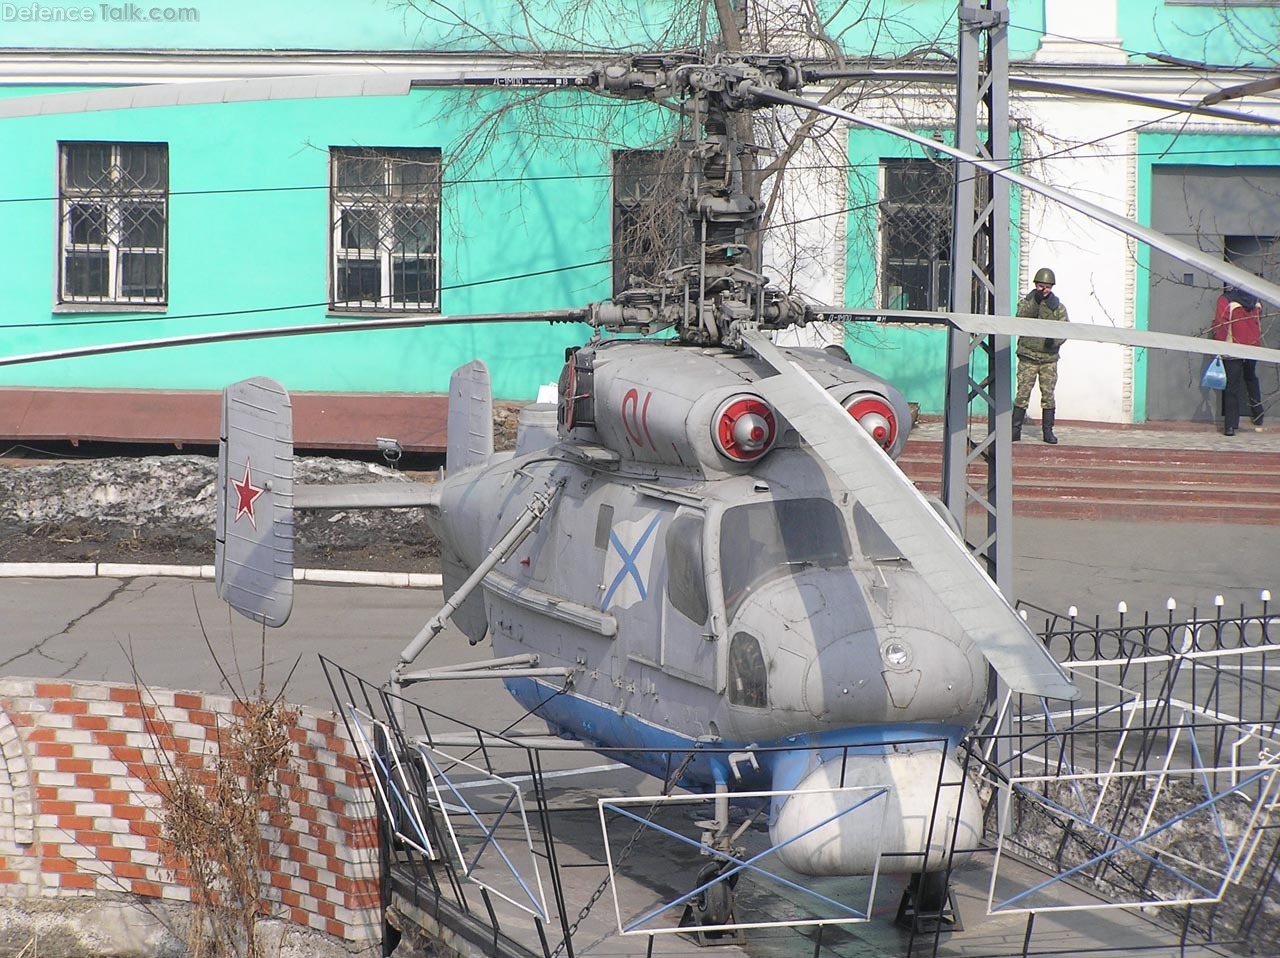 Ka-25PL